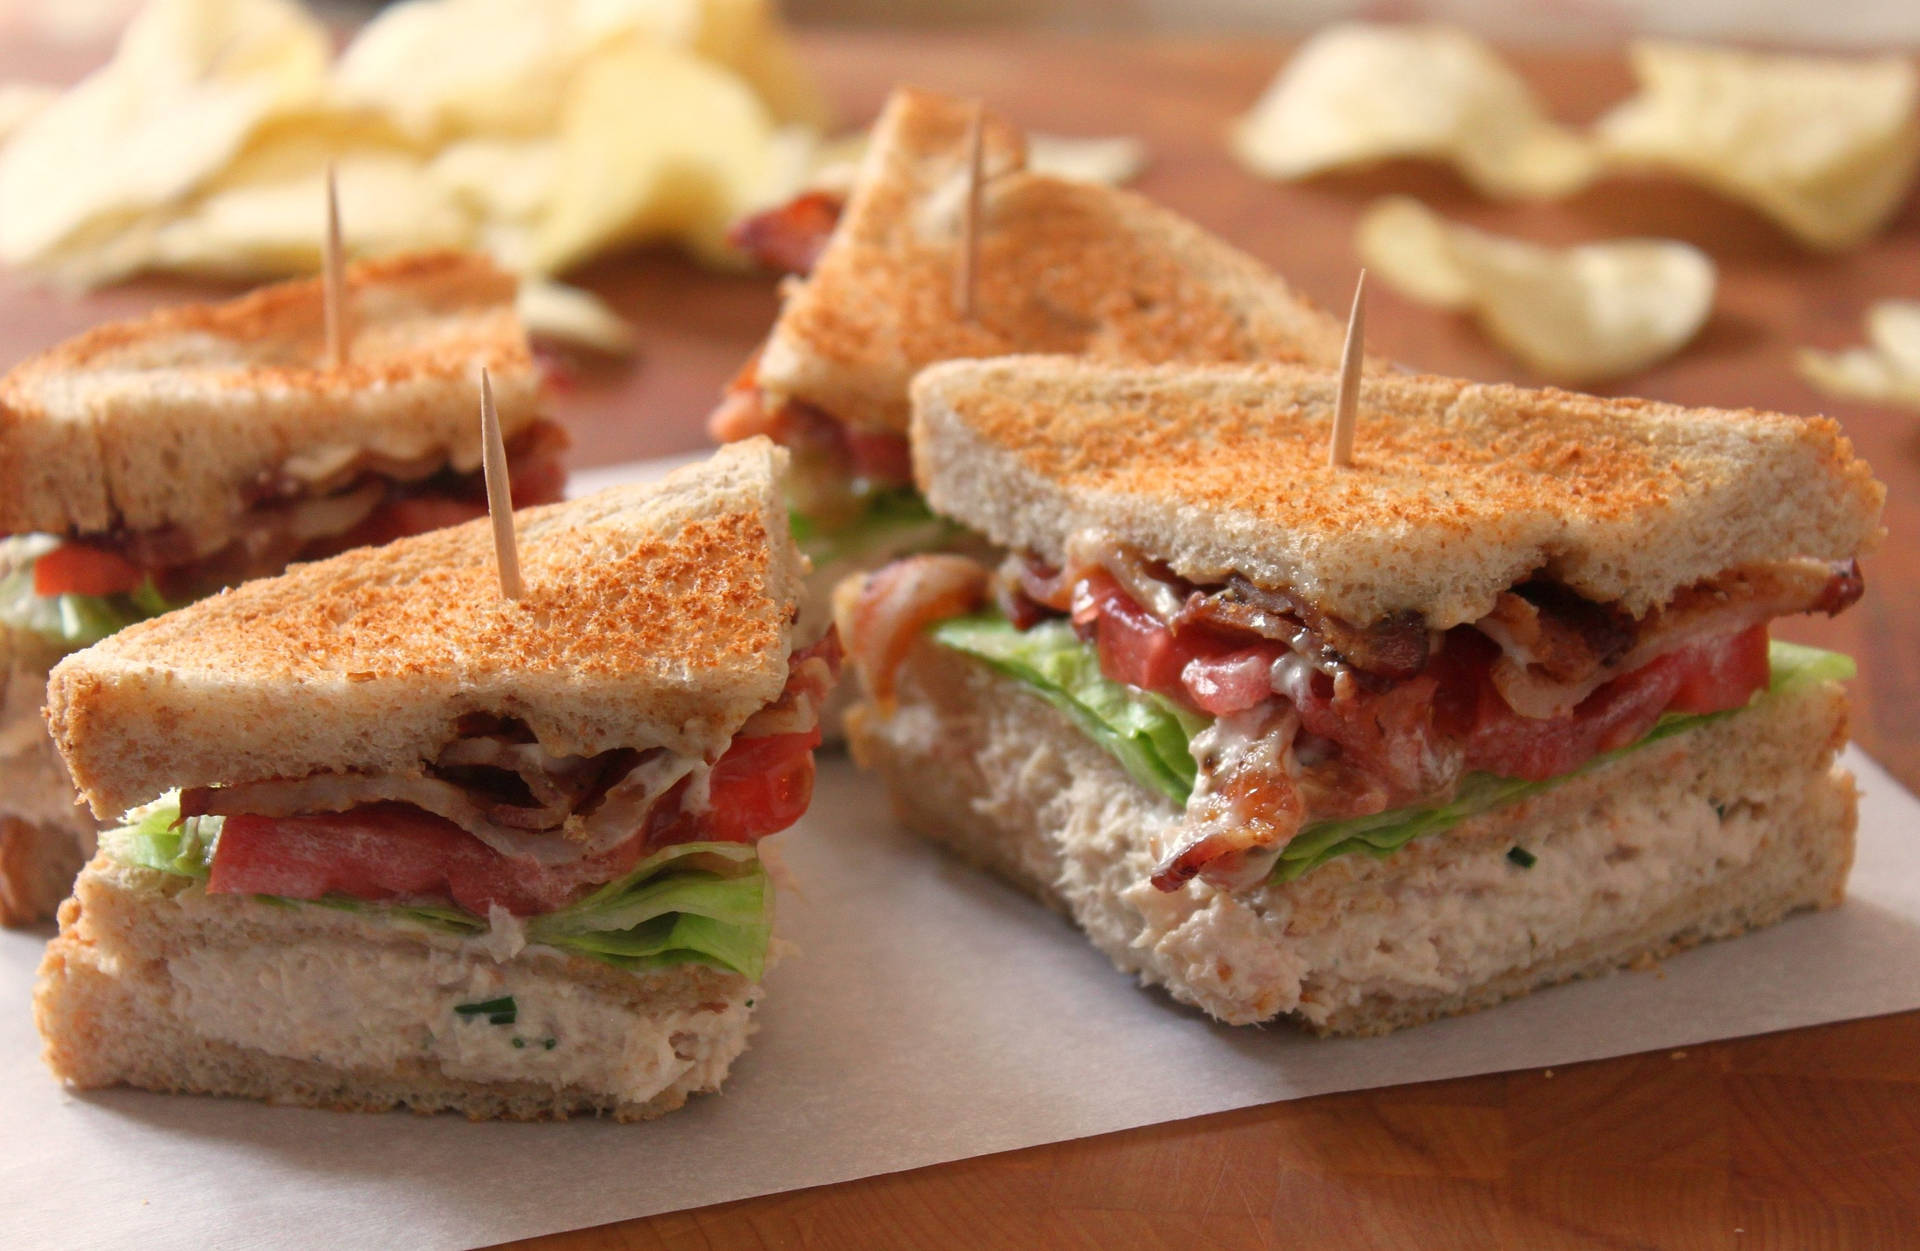 Tasty Tuna Club Sandwich For A Quick Lunch